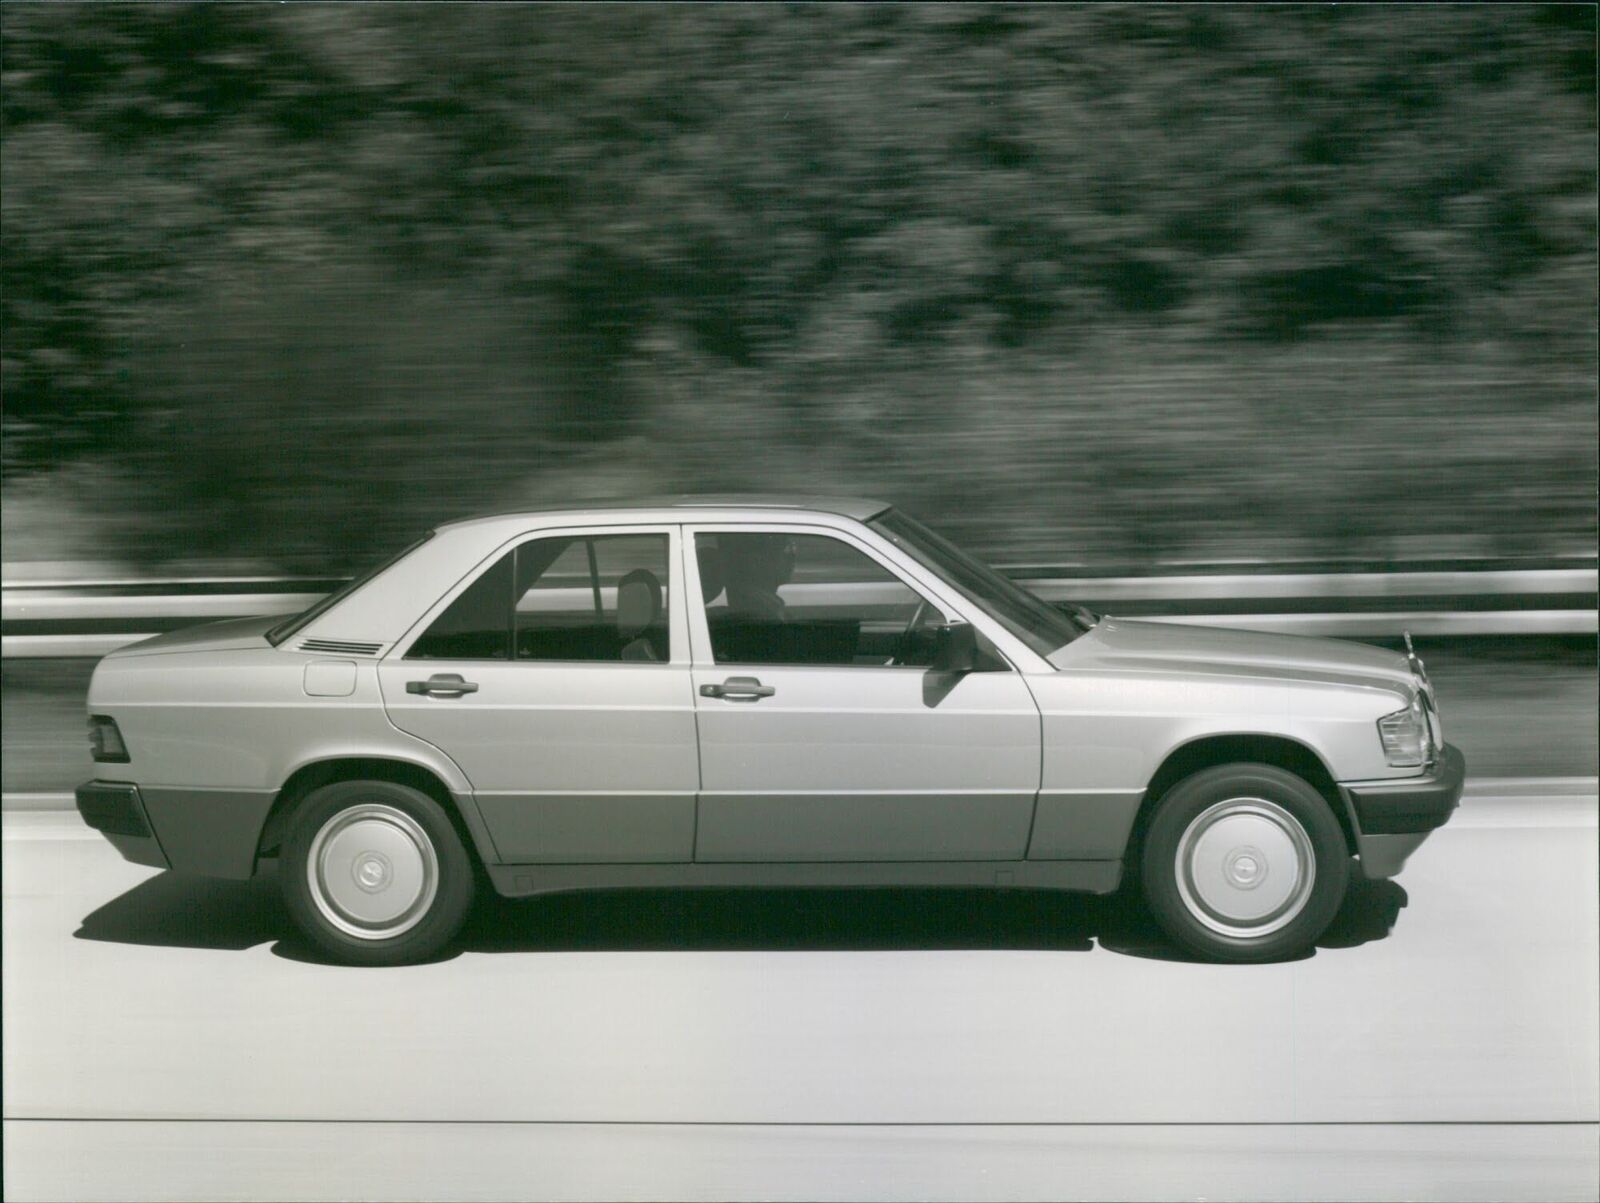 1988 Mercedes-Benz 190 D - 190 E 2.6 - Vintage Photograph 3461442